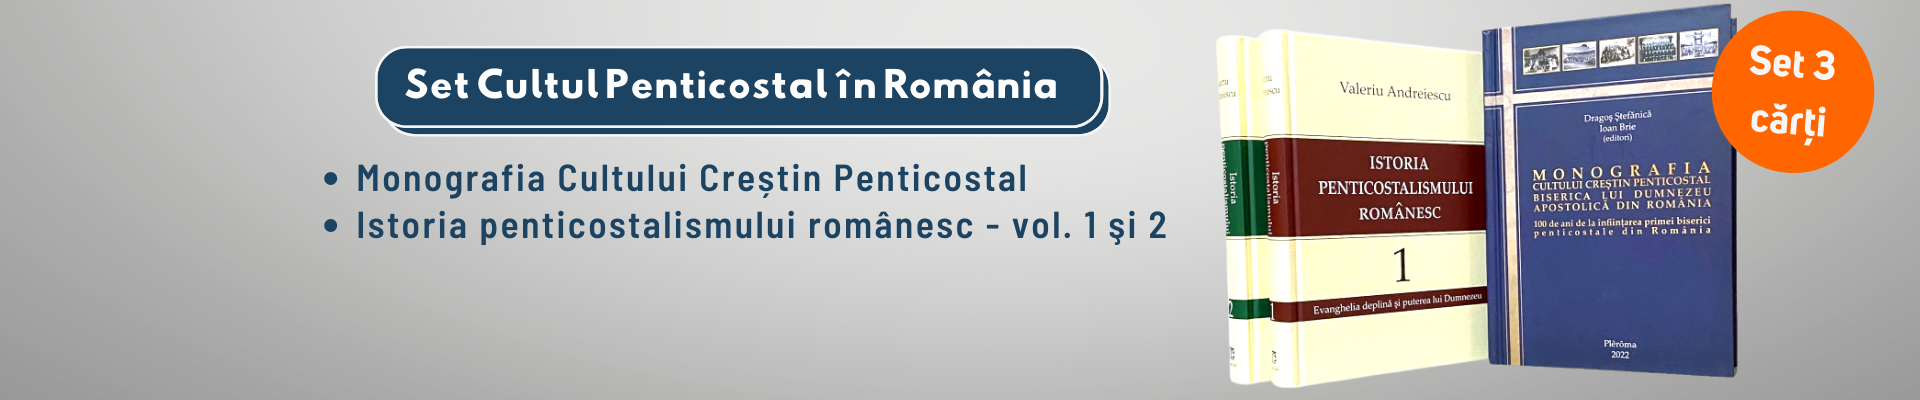 Set Cultul Penticostal în România